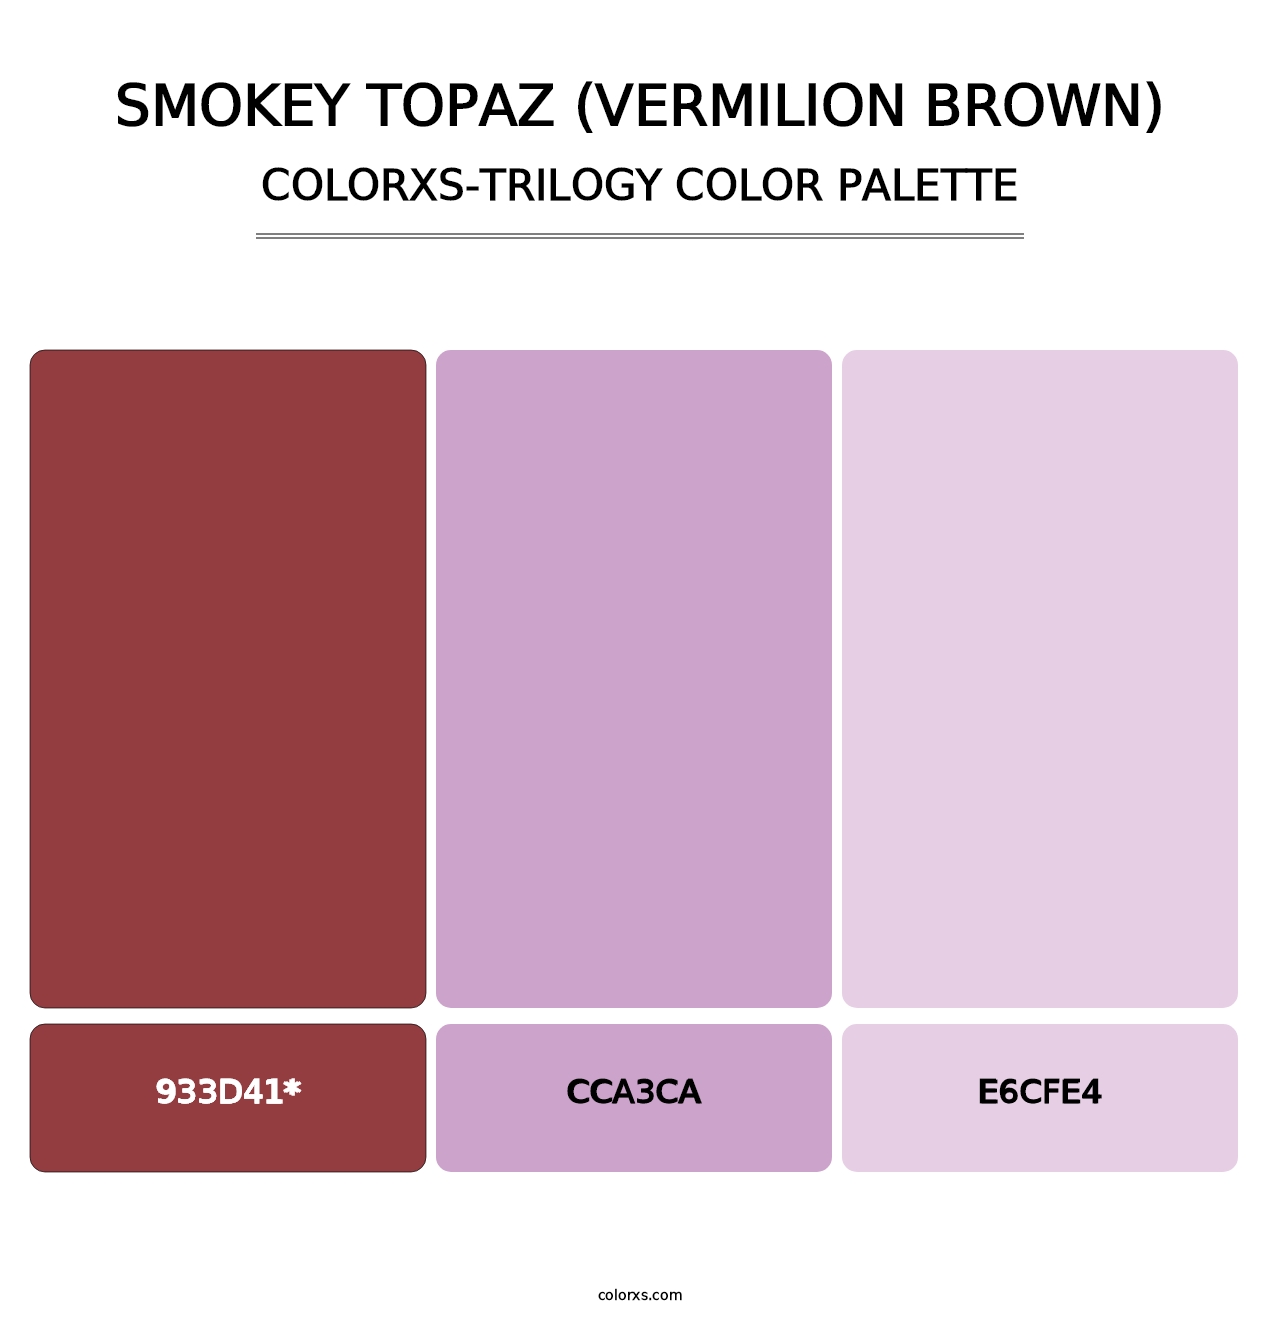 Smokey Topaz (Vermilion Brown) - Colorxs Trilogy Palette